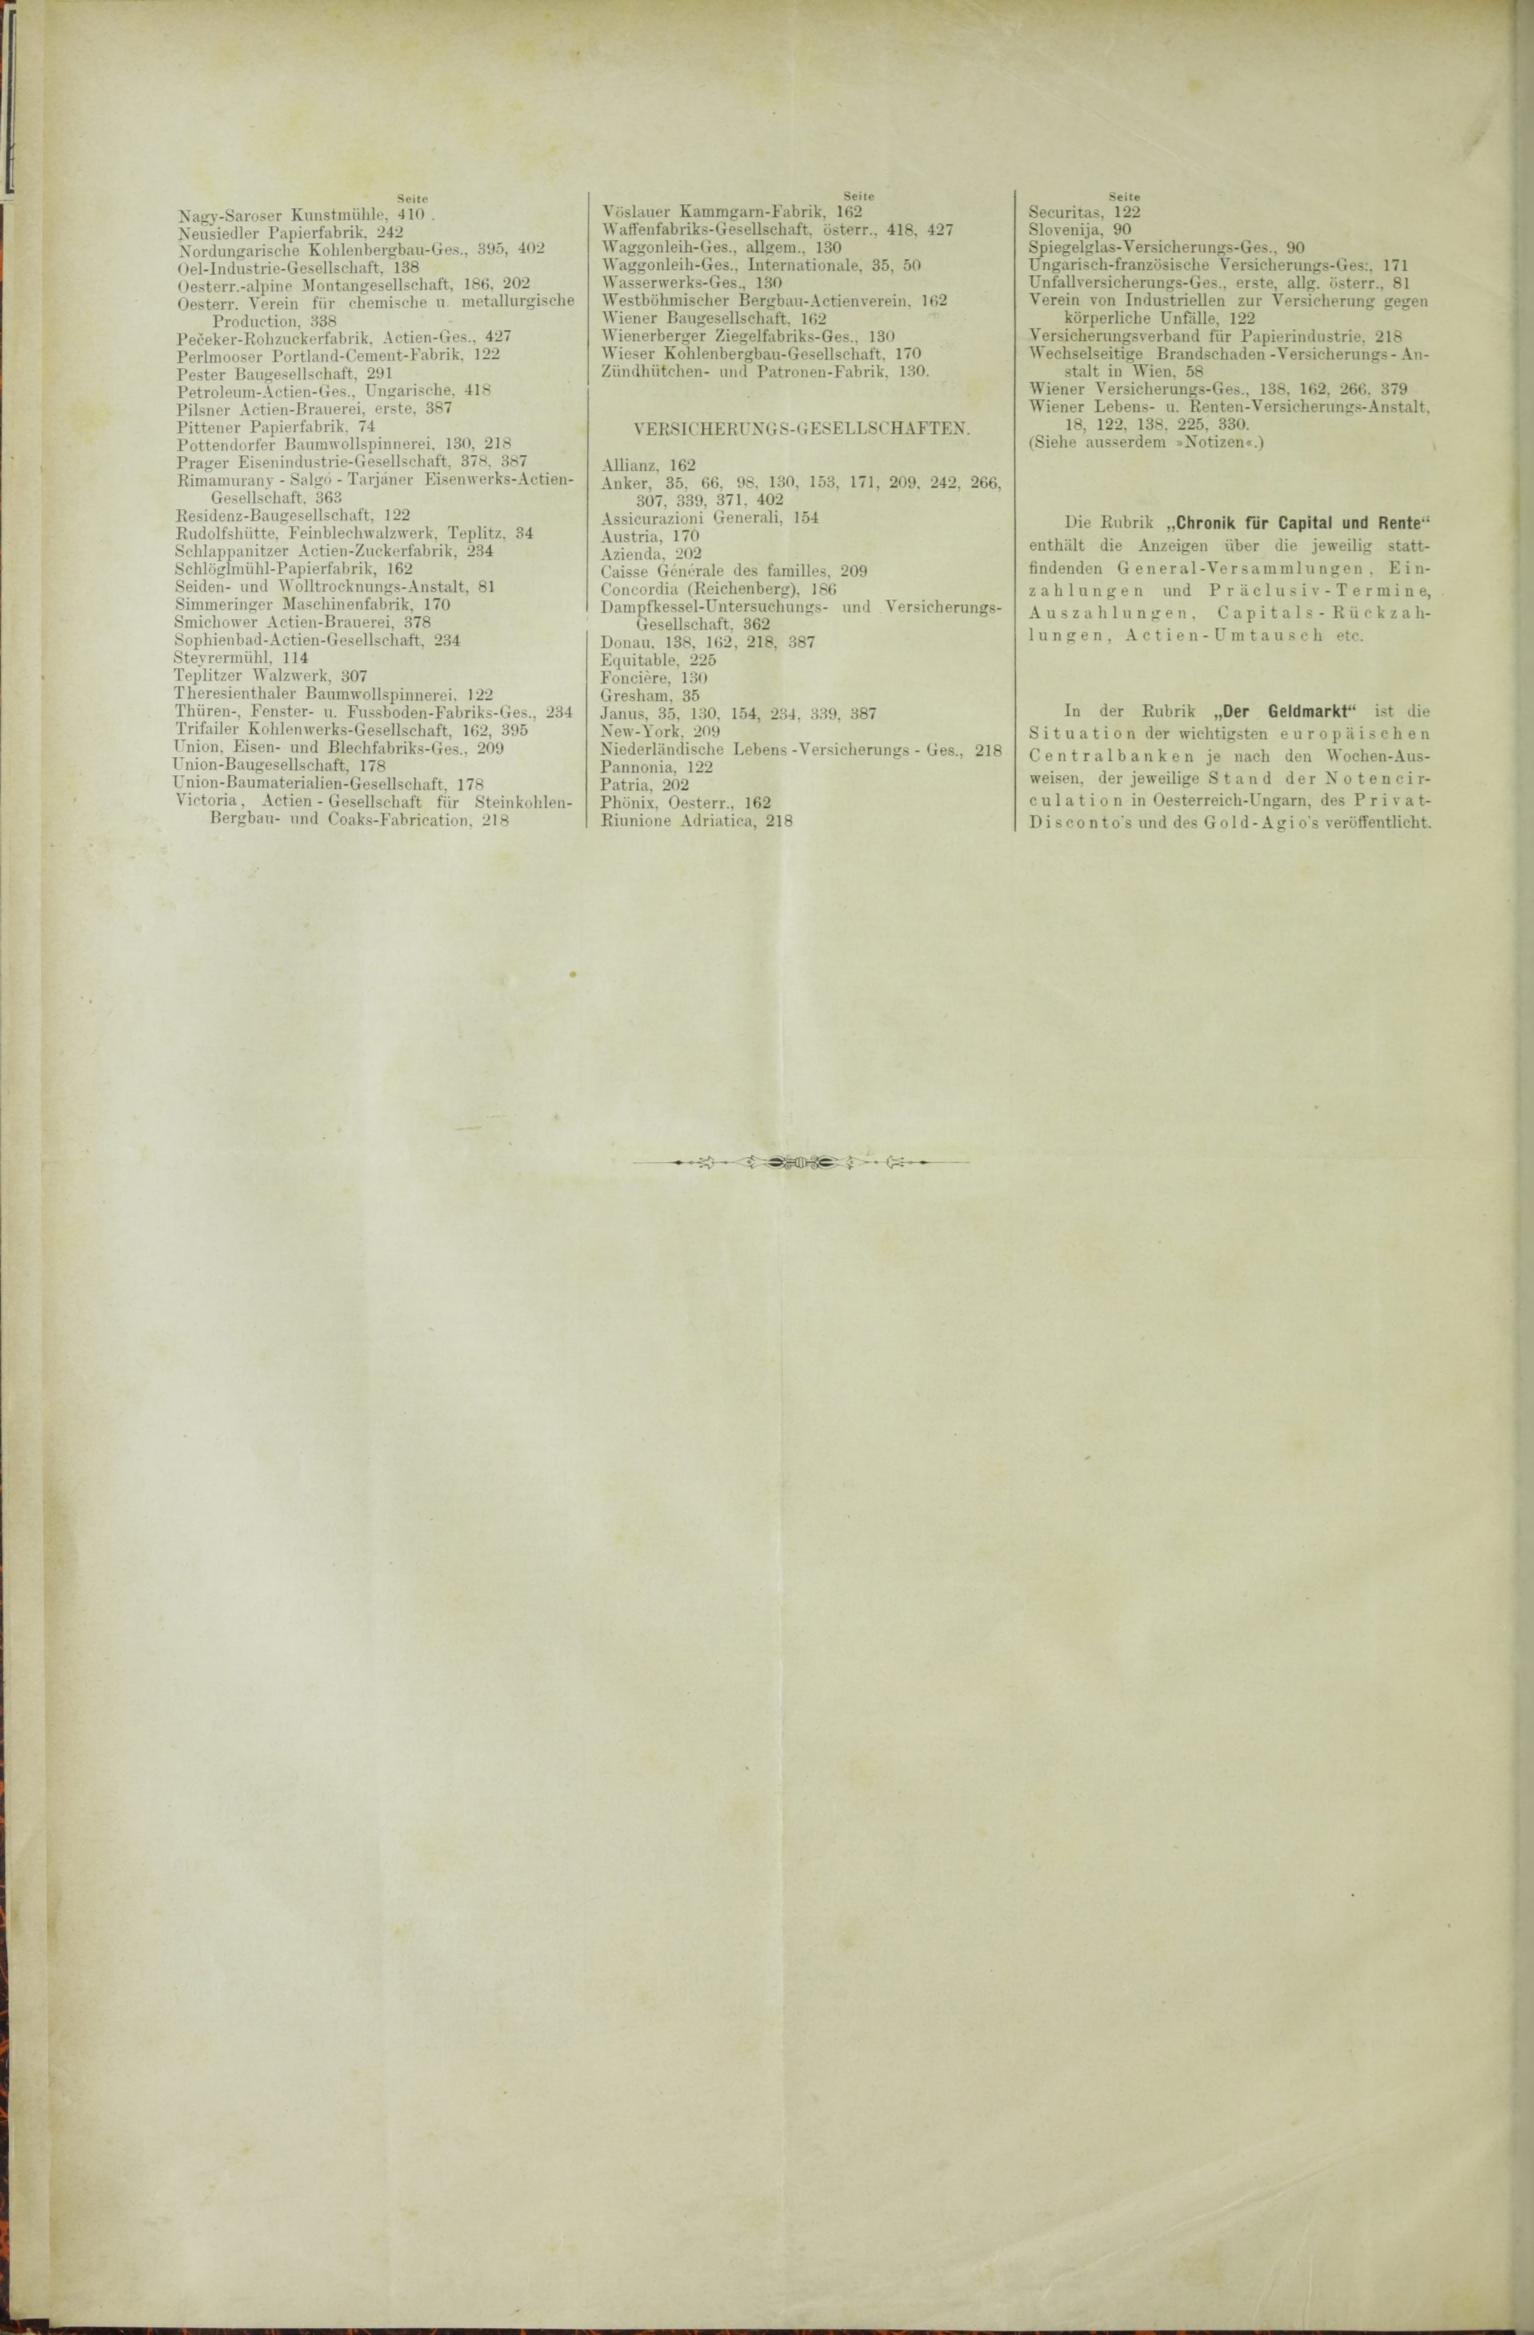 Der Tresor 14.05.1885 - Seite 12